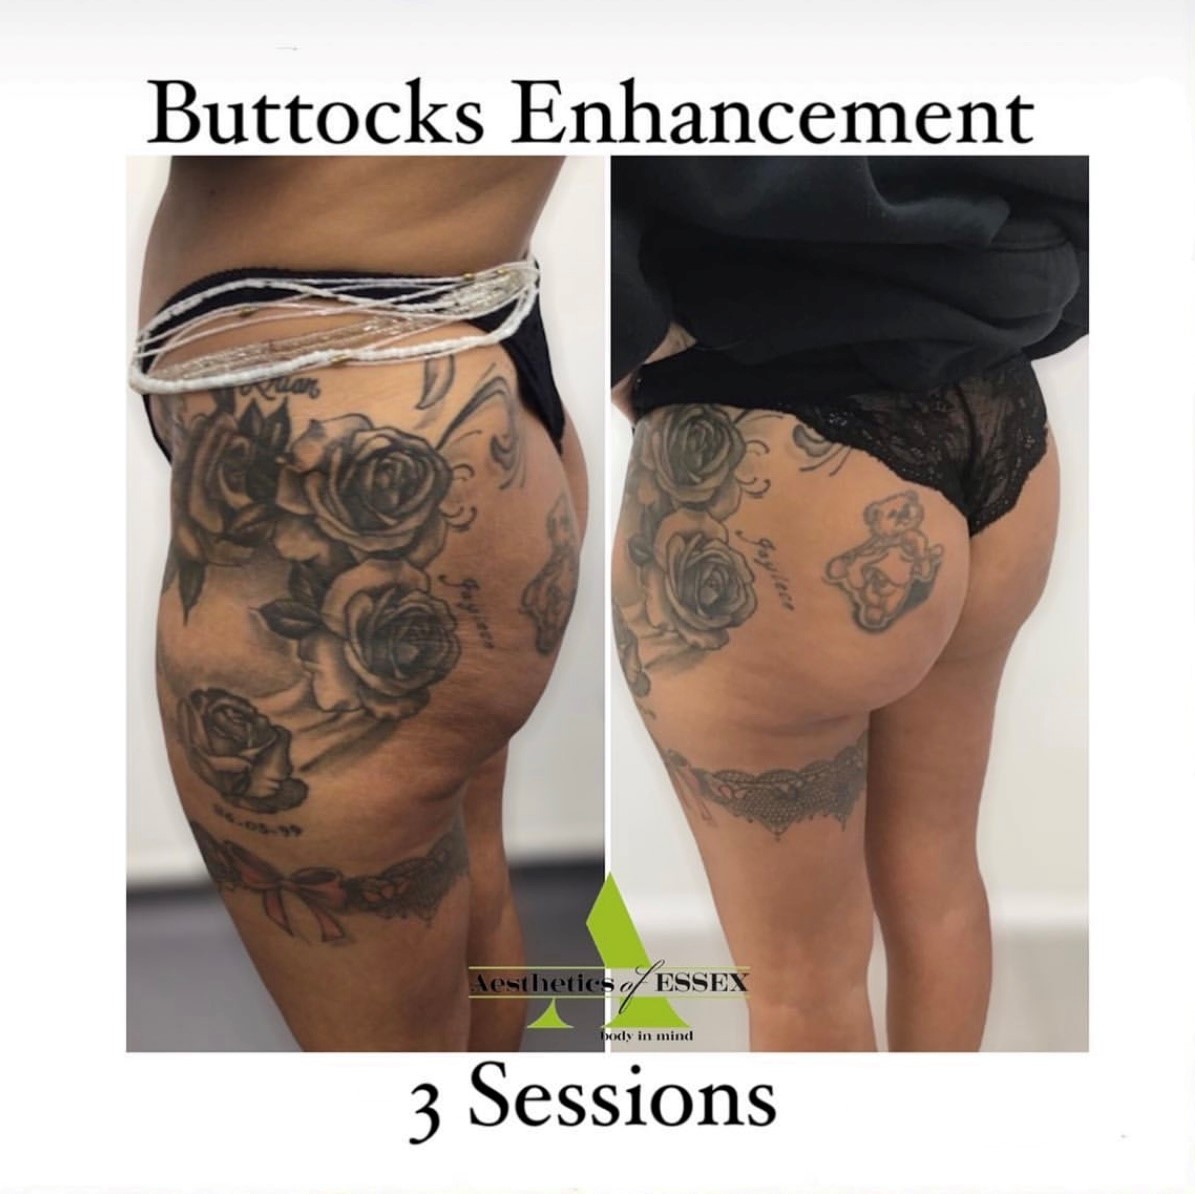 Buttocks enhancement